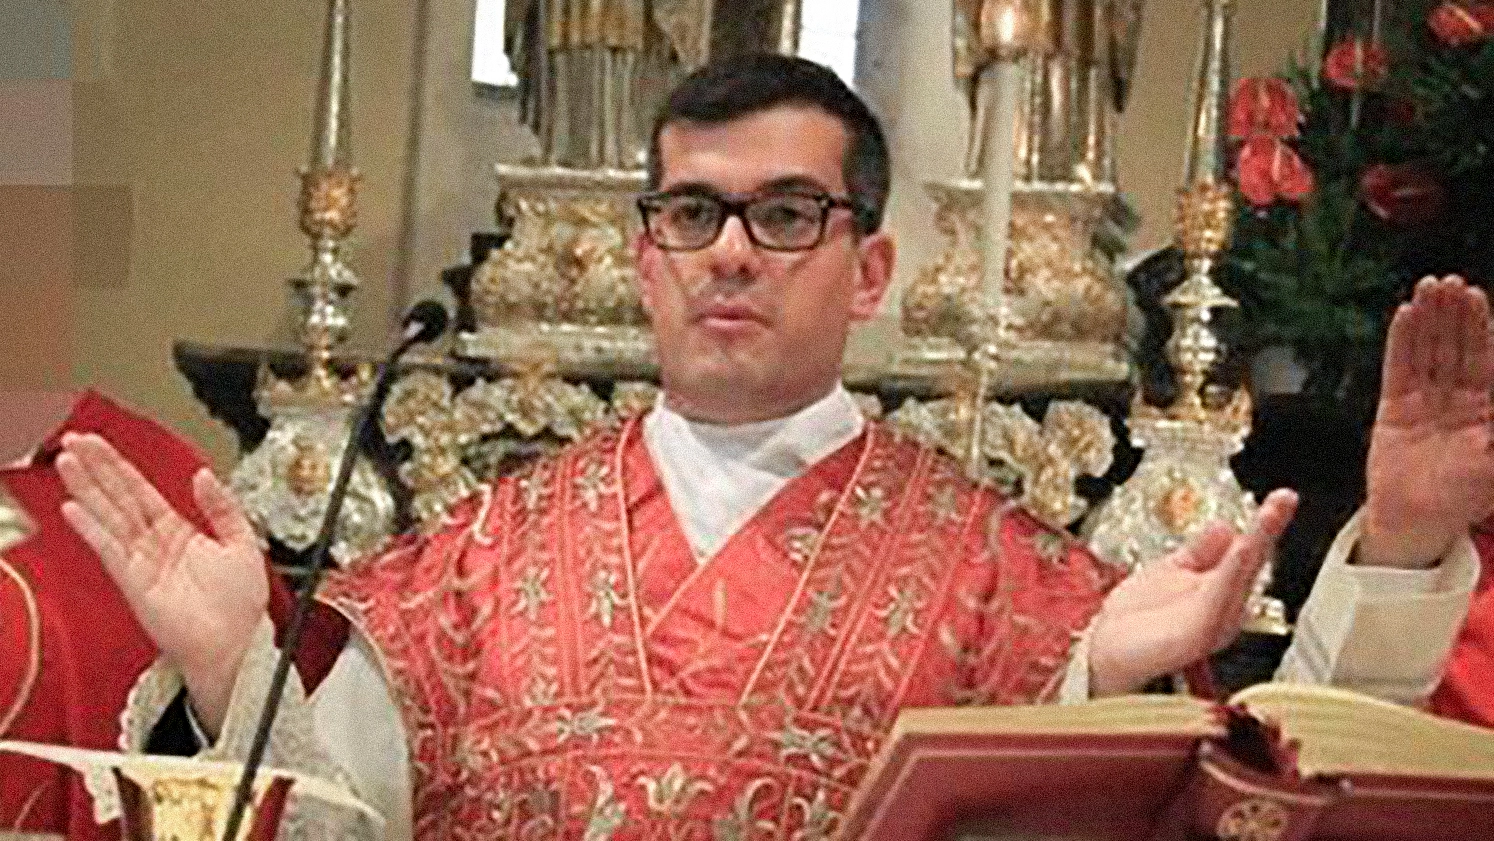 Don Emanuele Tempesta, ex parroco vicario di Busto Garolfo, all'epoca dei presunti abusi